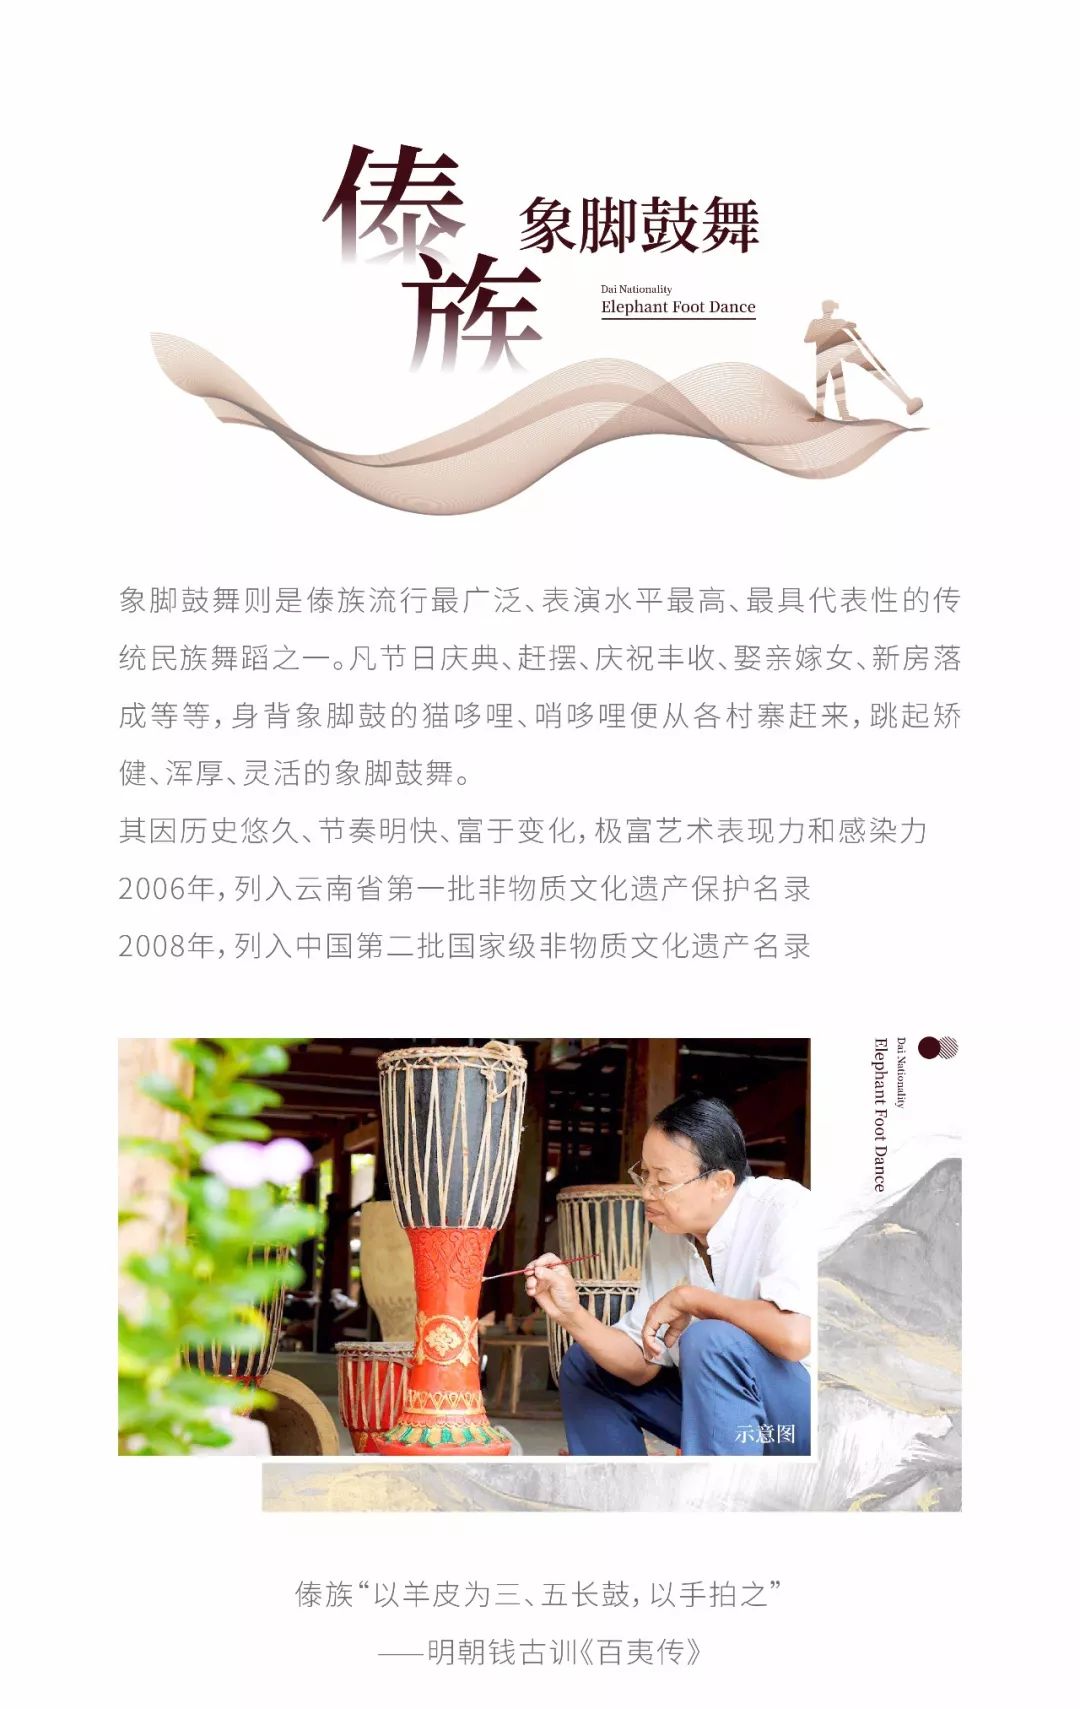 云南省2019国家级非遗∣《傣族象脚鼓舞》大赛,与世界共狂欢